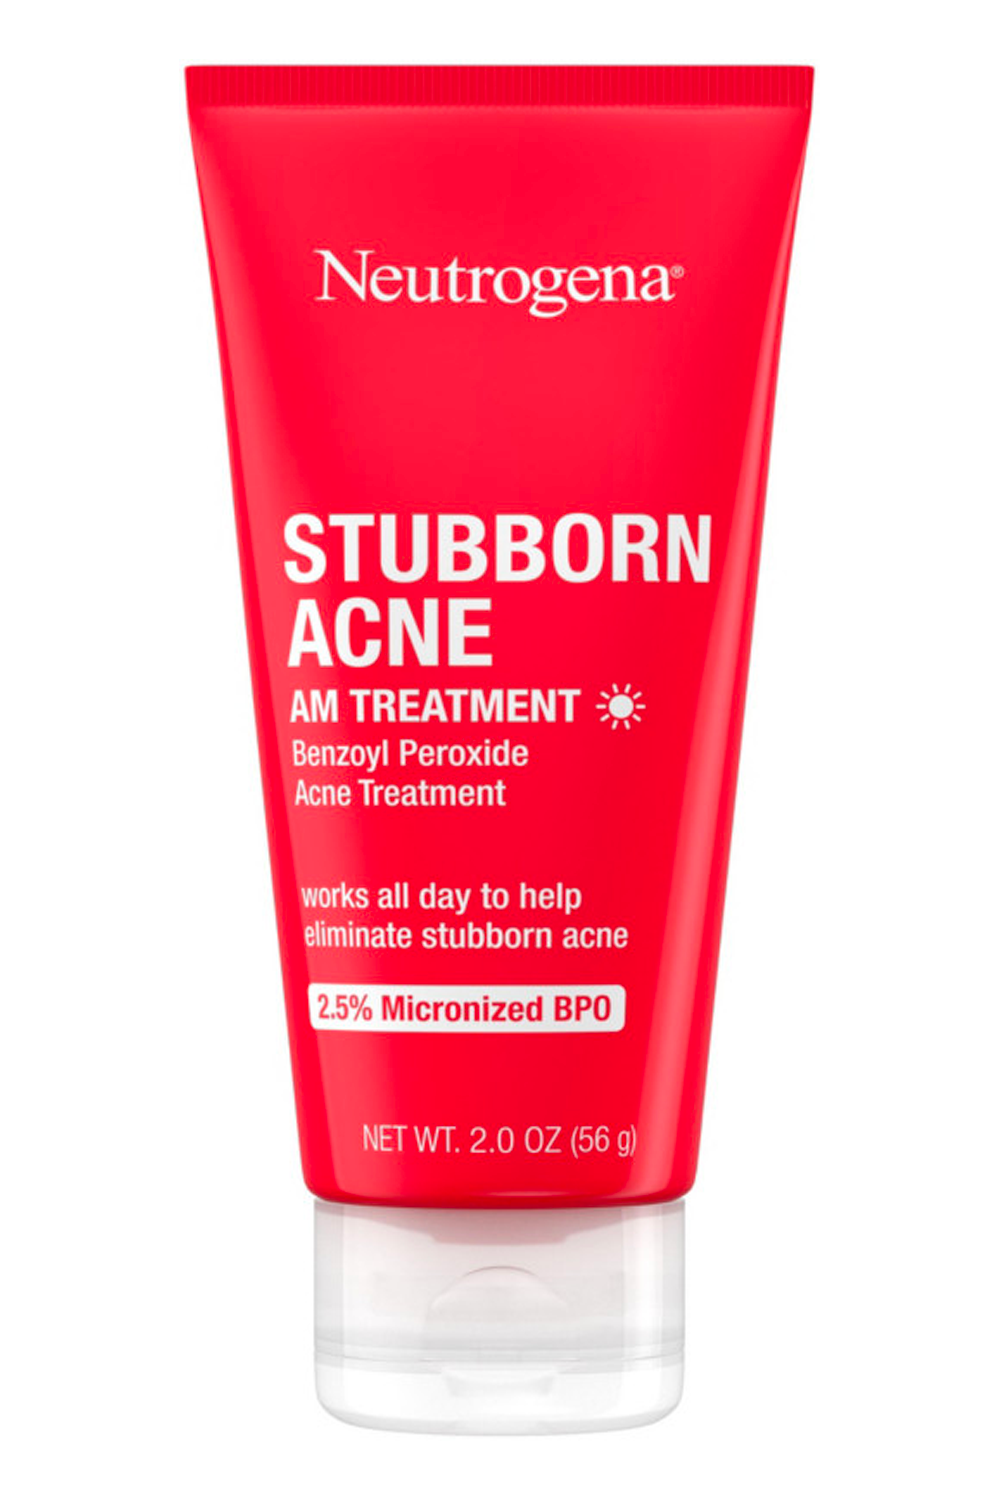 Neutrogena Stubborn Acne A.M. Treatment